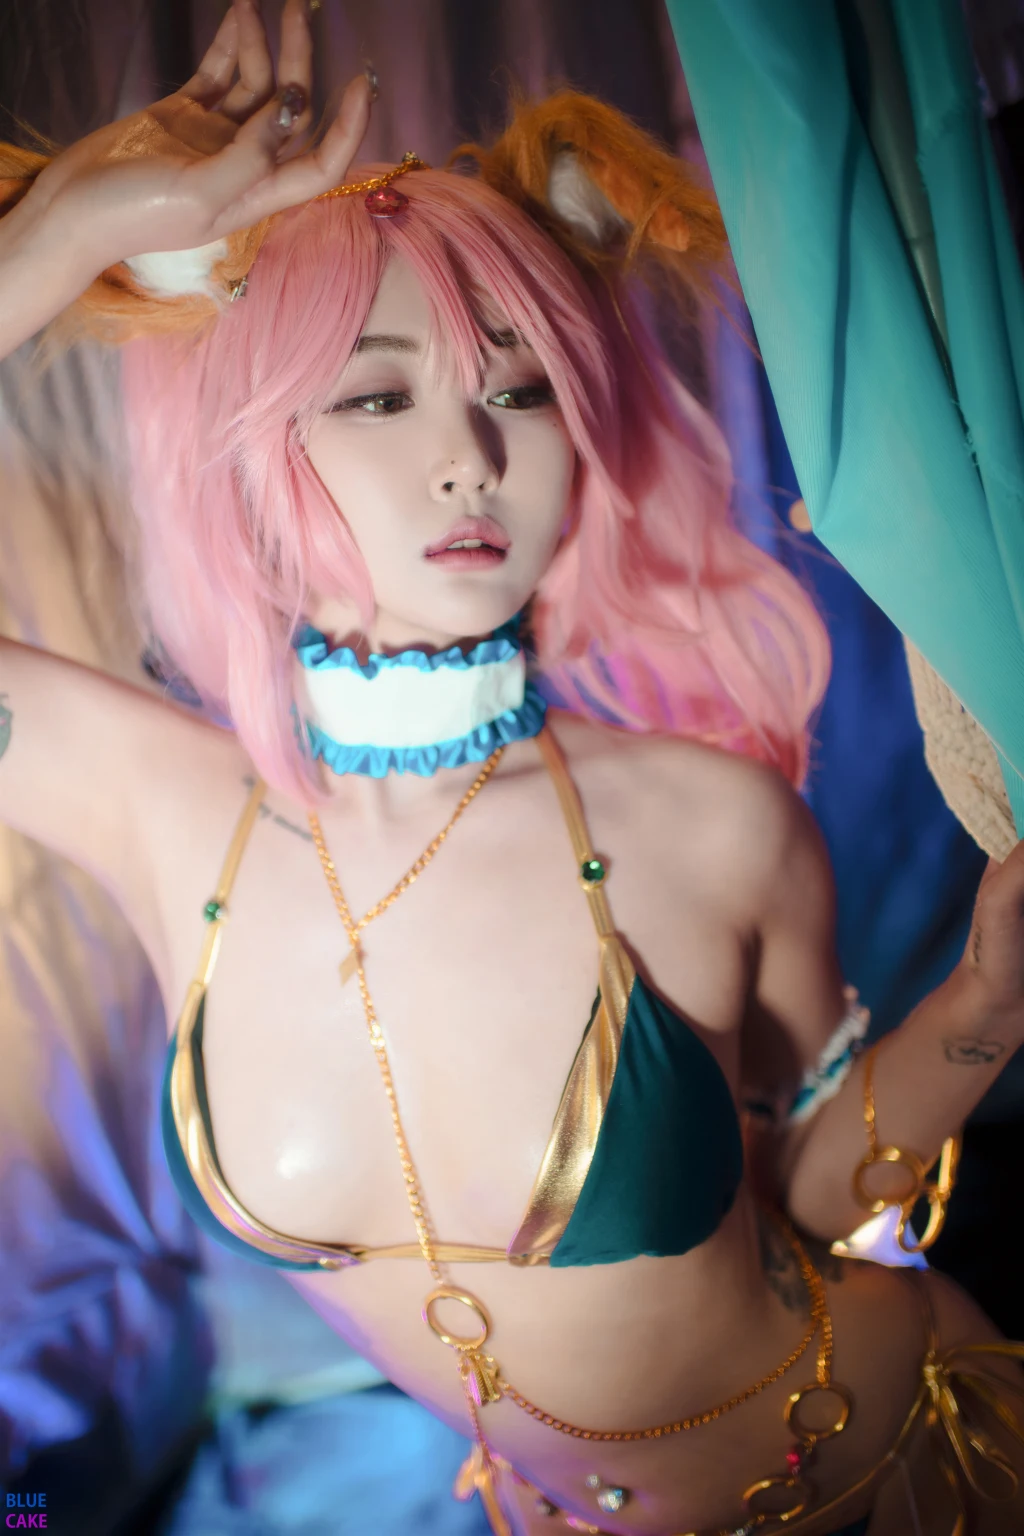 [BLUECAKE] Bomi (보미): Pink Dancer (73 photos) photo 2-16